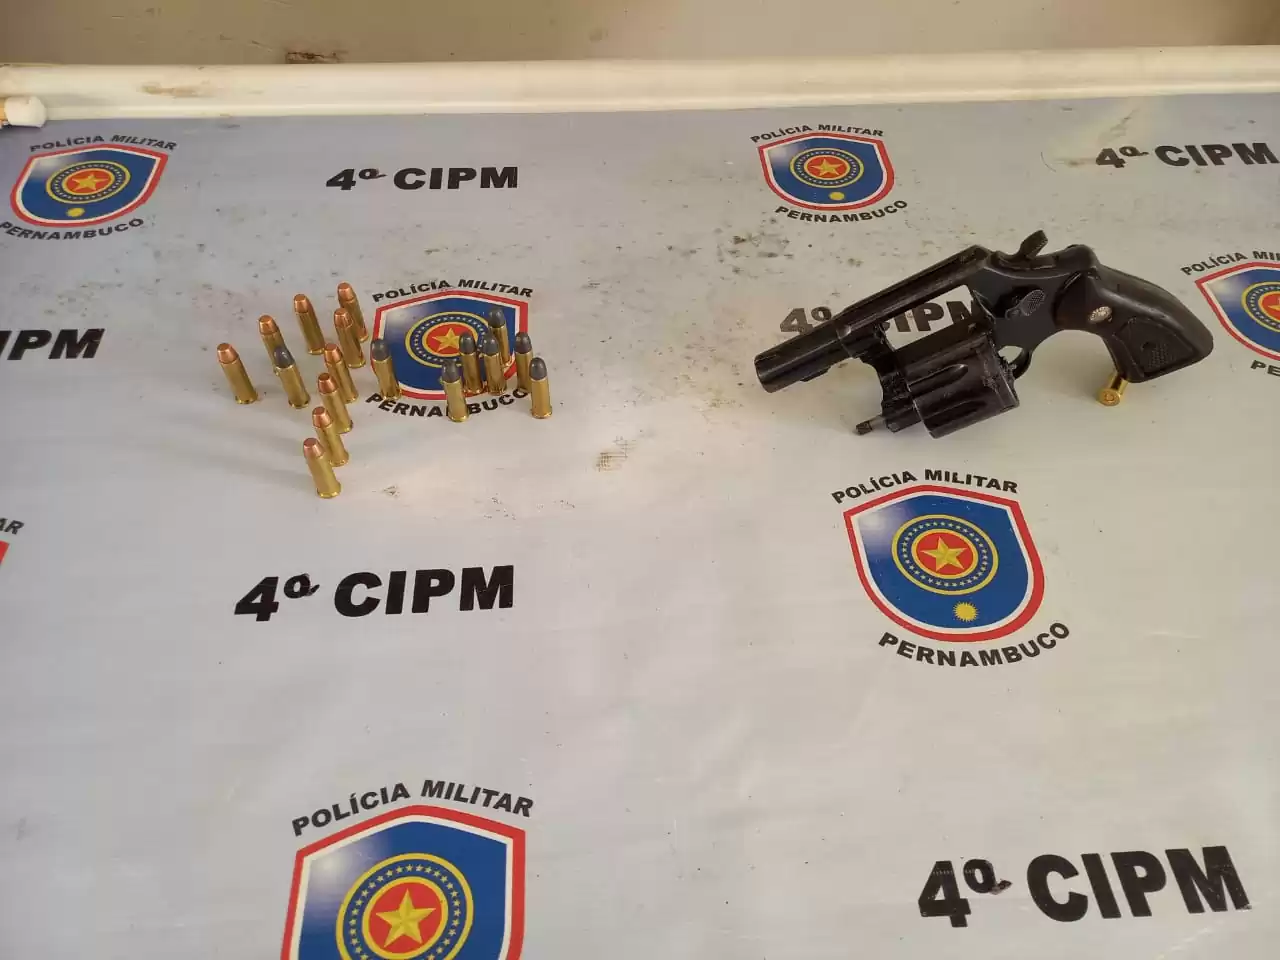 PETROLÂNDIA: Policiais Militares da 4ª CIPM cumprem mandado de busca e apreensão e apreendem arma de fogo na Zona Rural